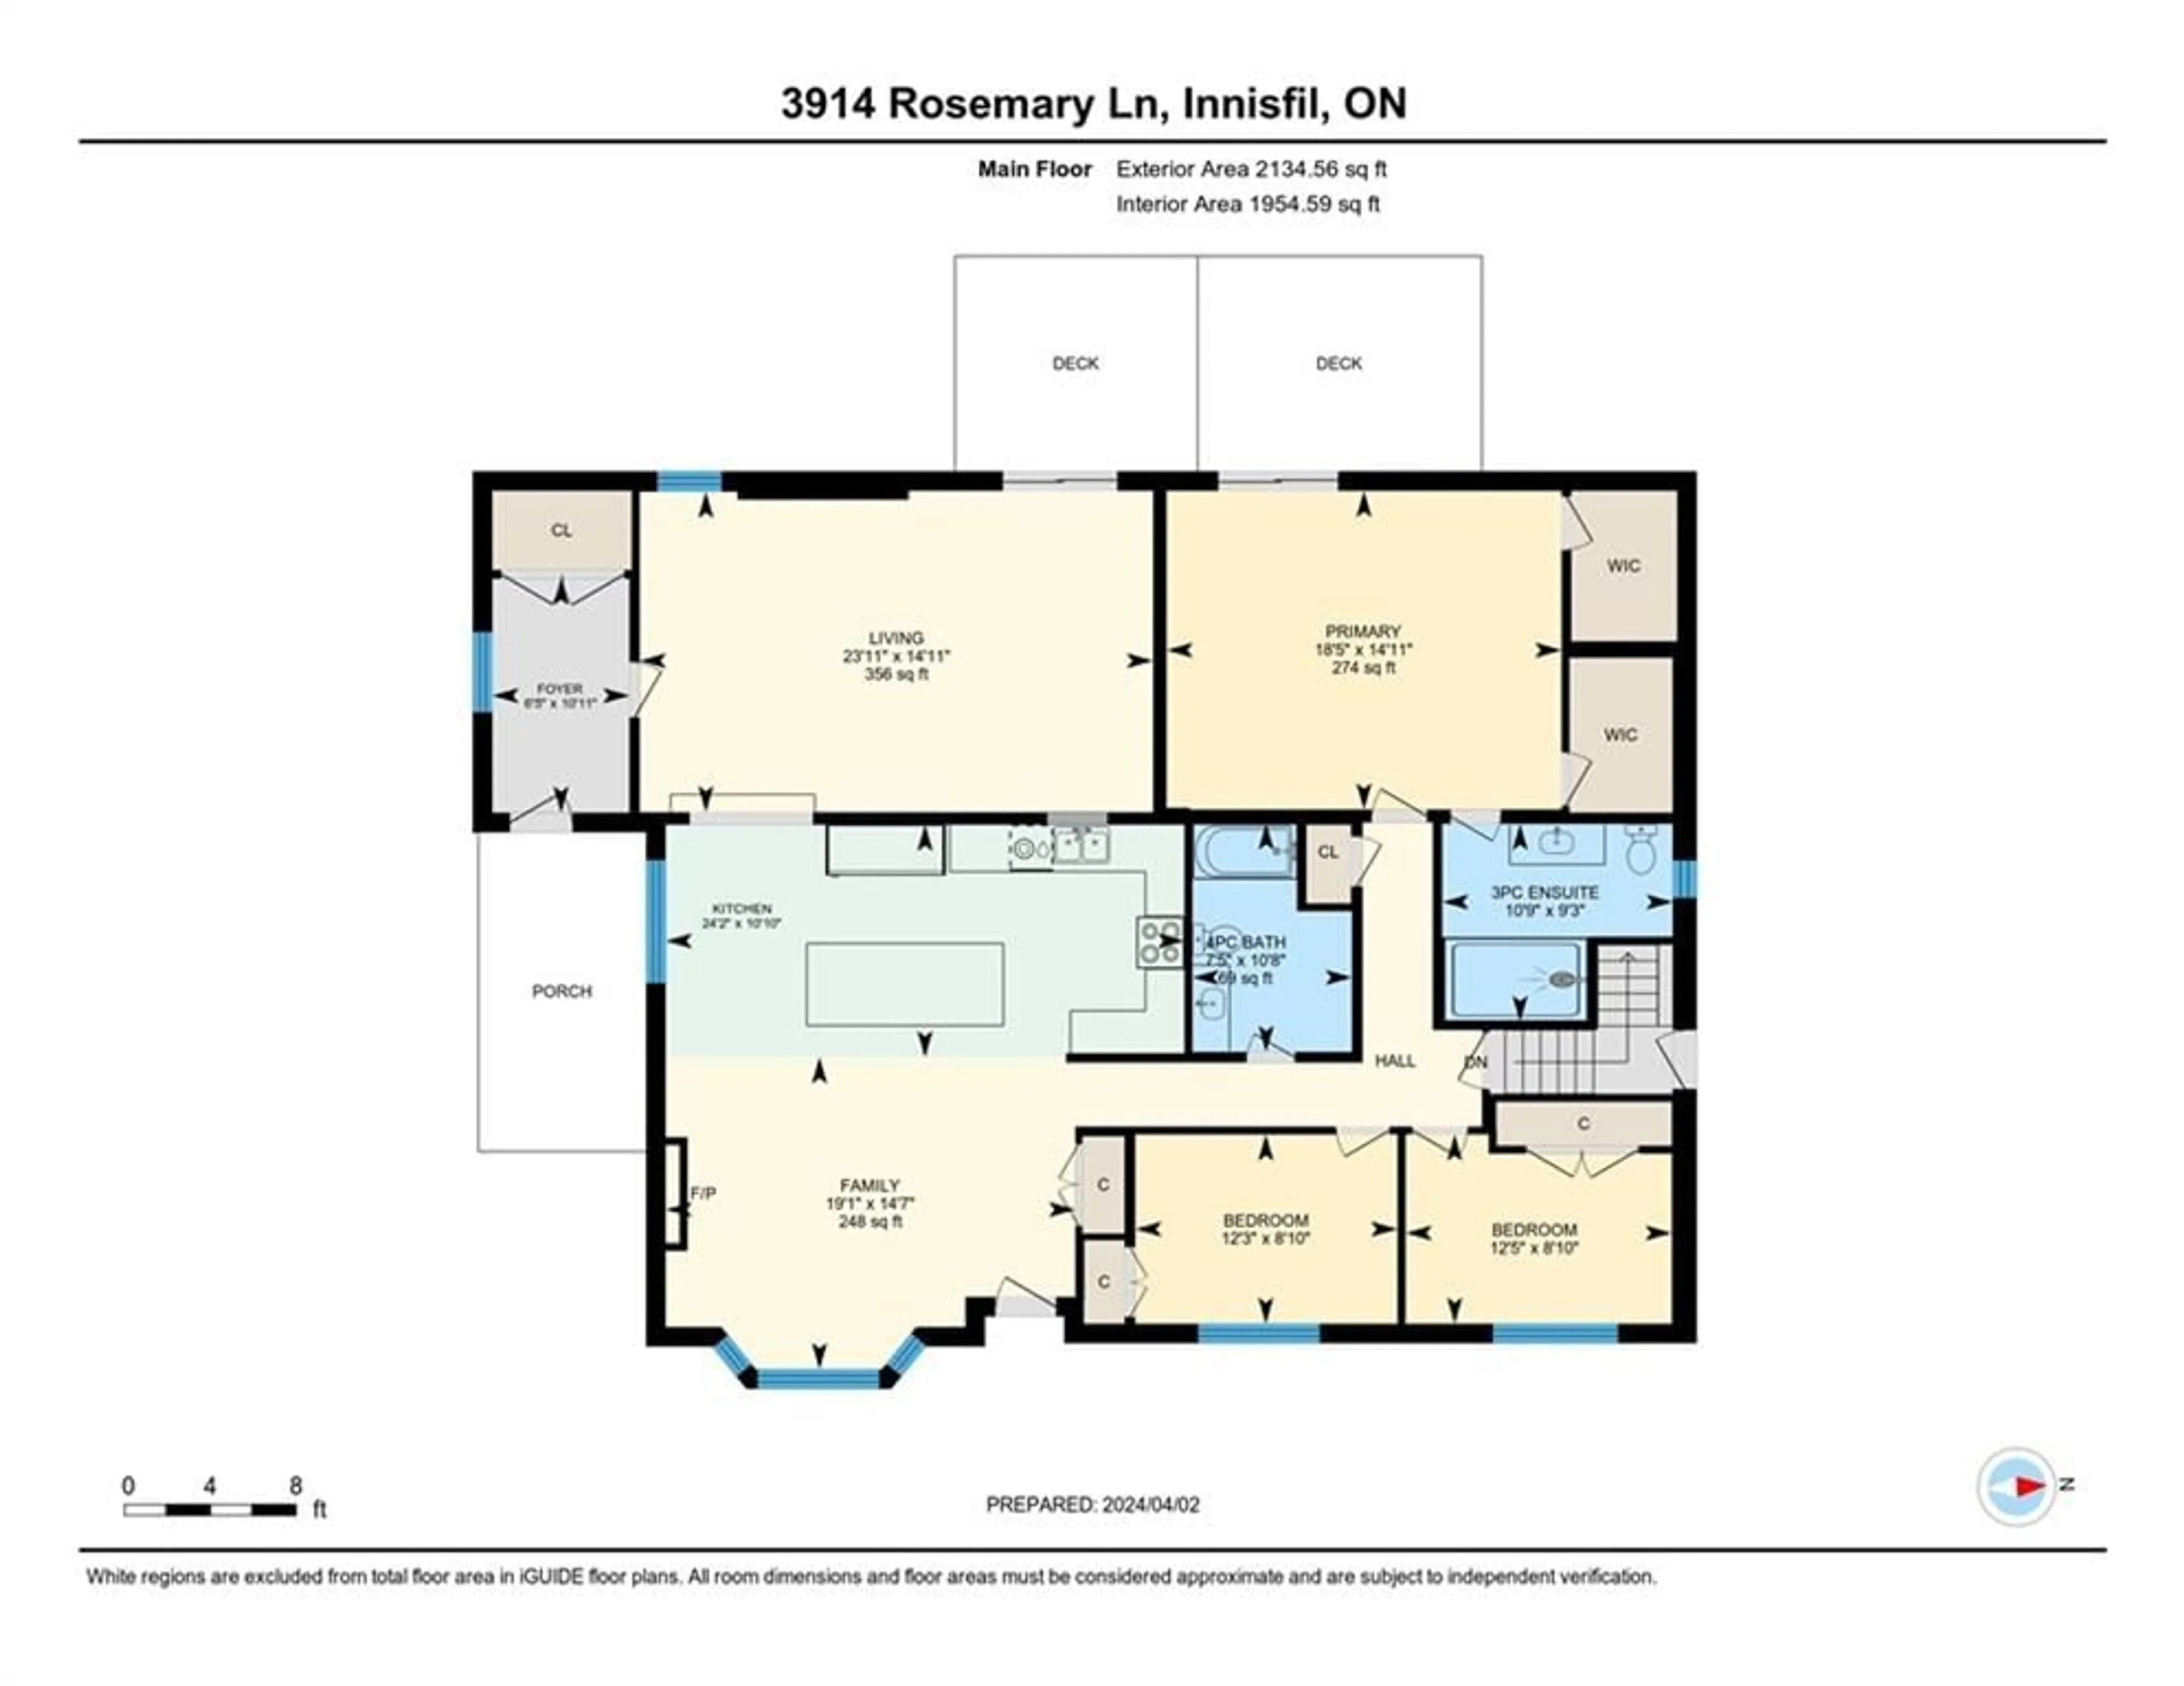 Floor plan for 3914 Rosemary Lane, Innisfil Ontario L9S 2L6